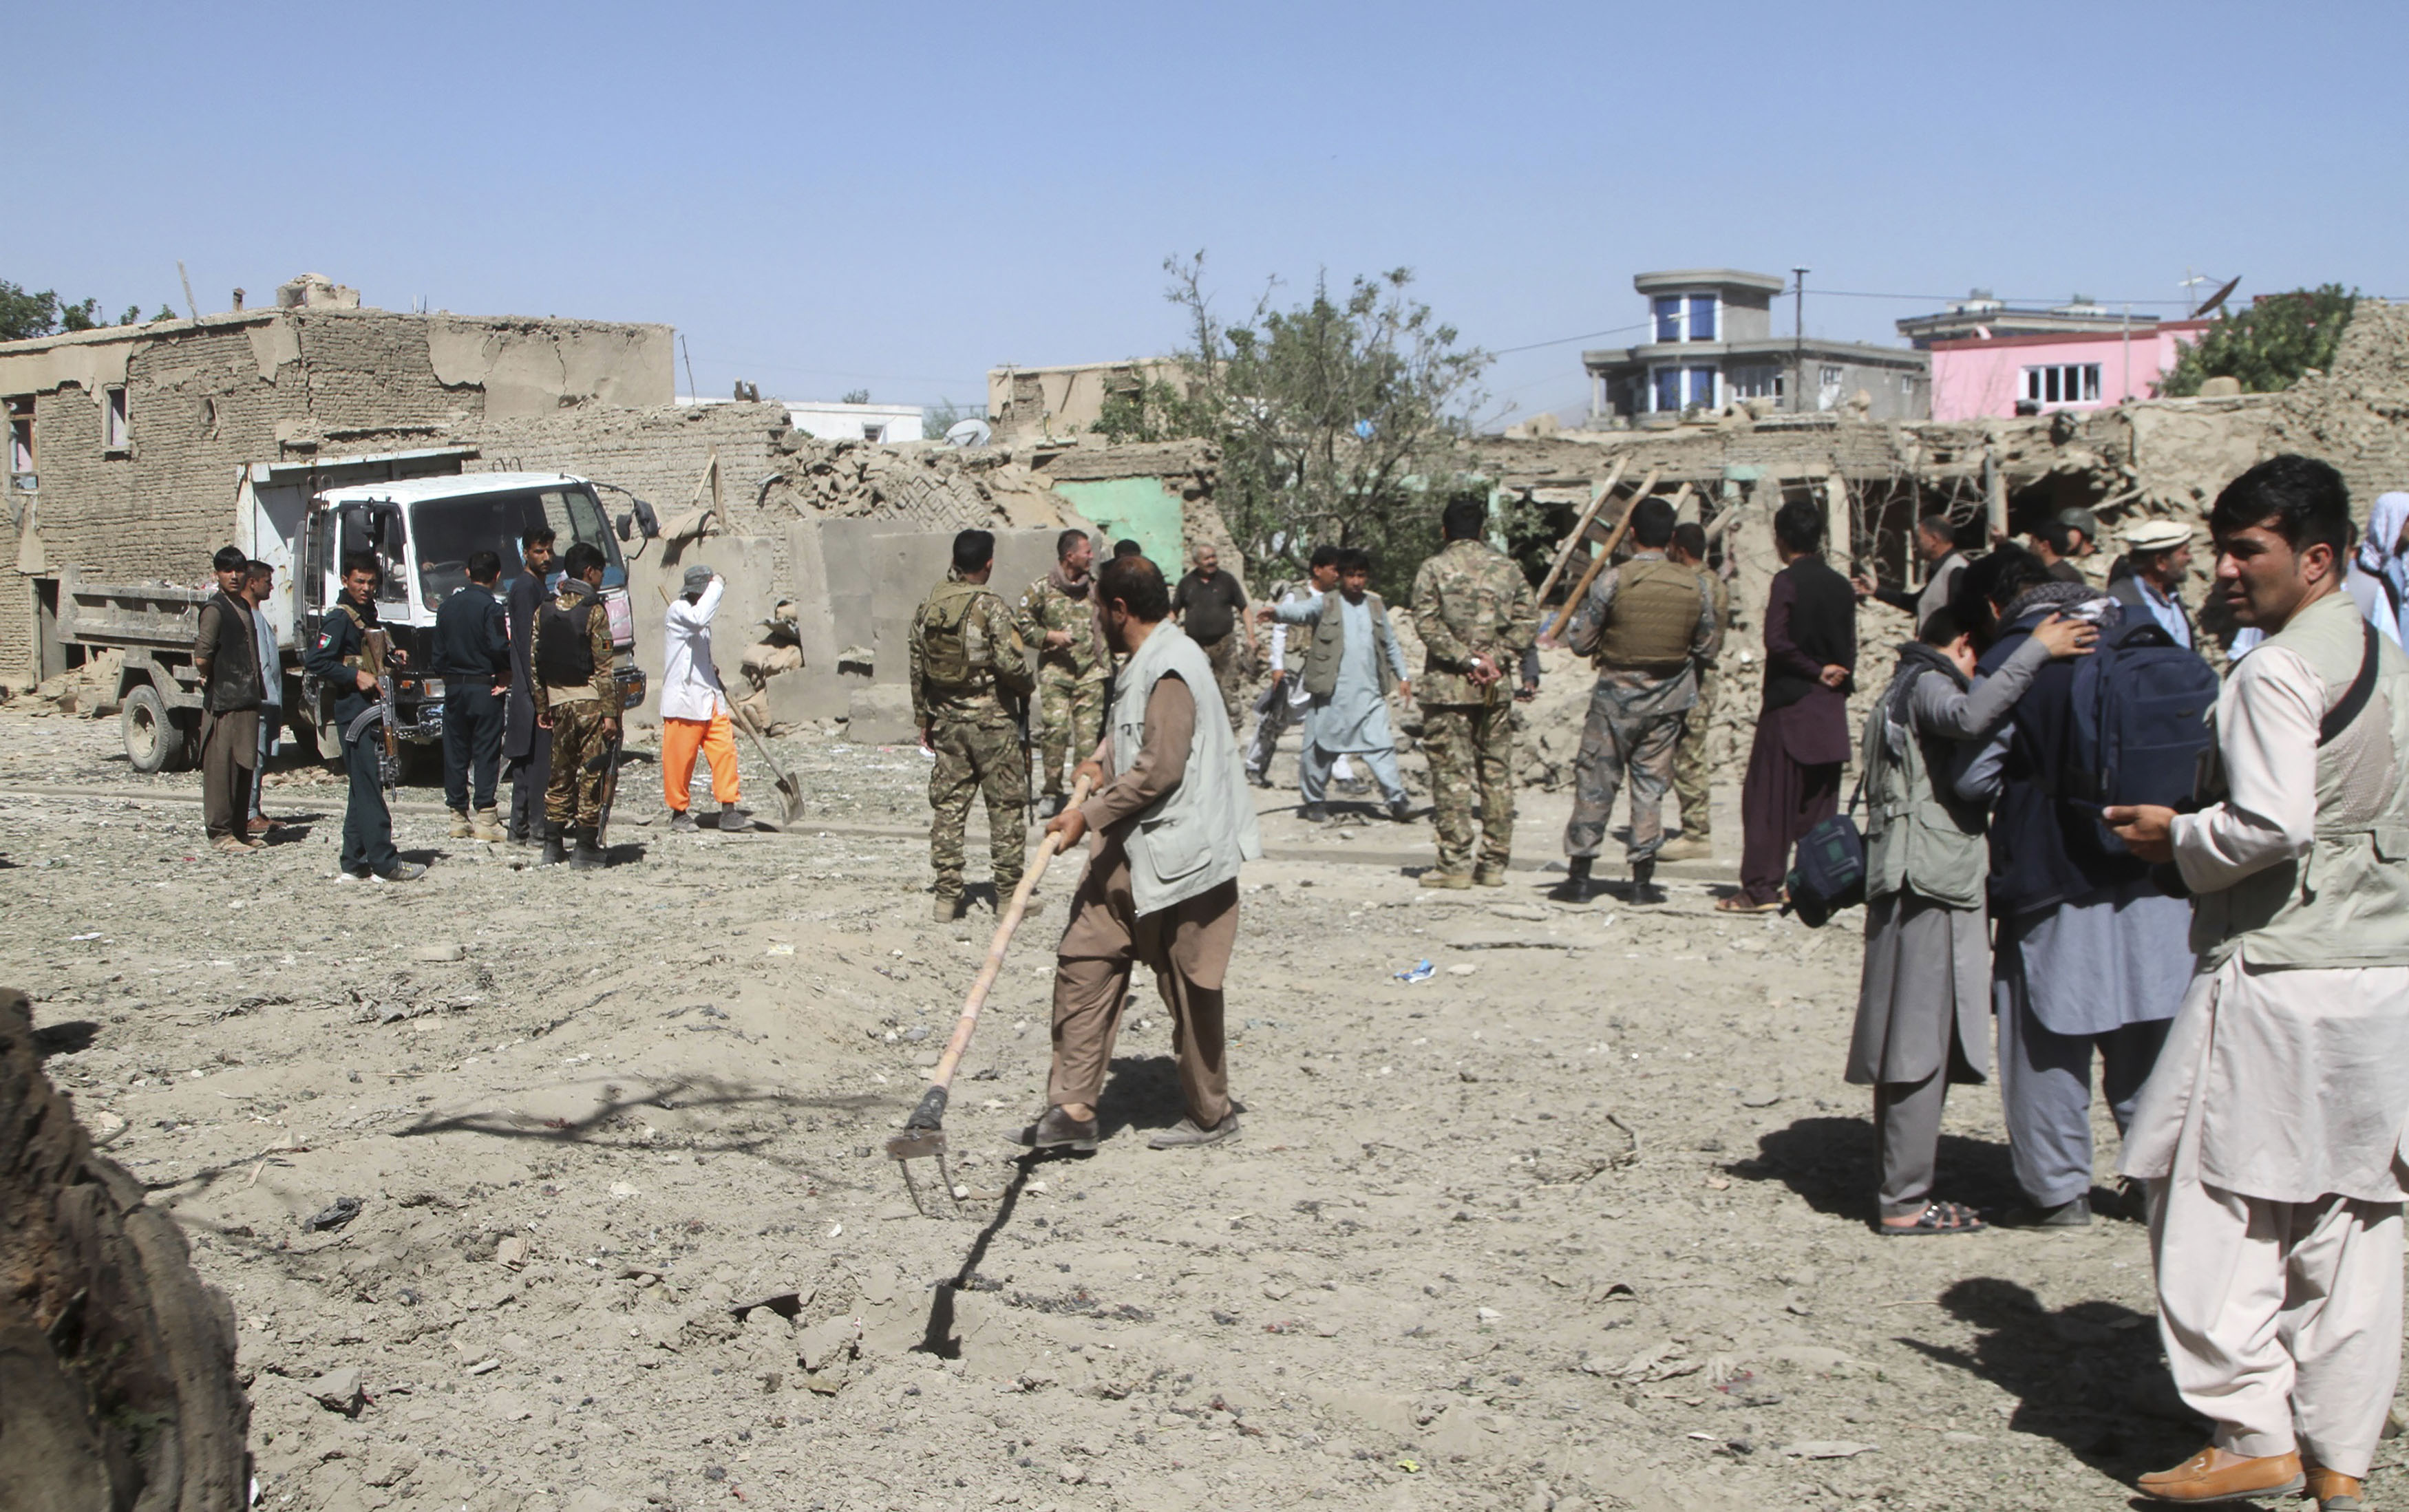 El movimiento islamista Talibán emitió un comunicado en el que aseguró que no está involucrado en el atentado./AP